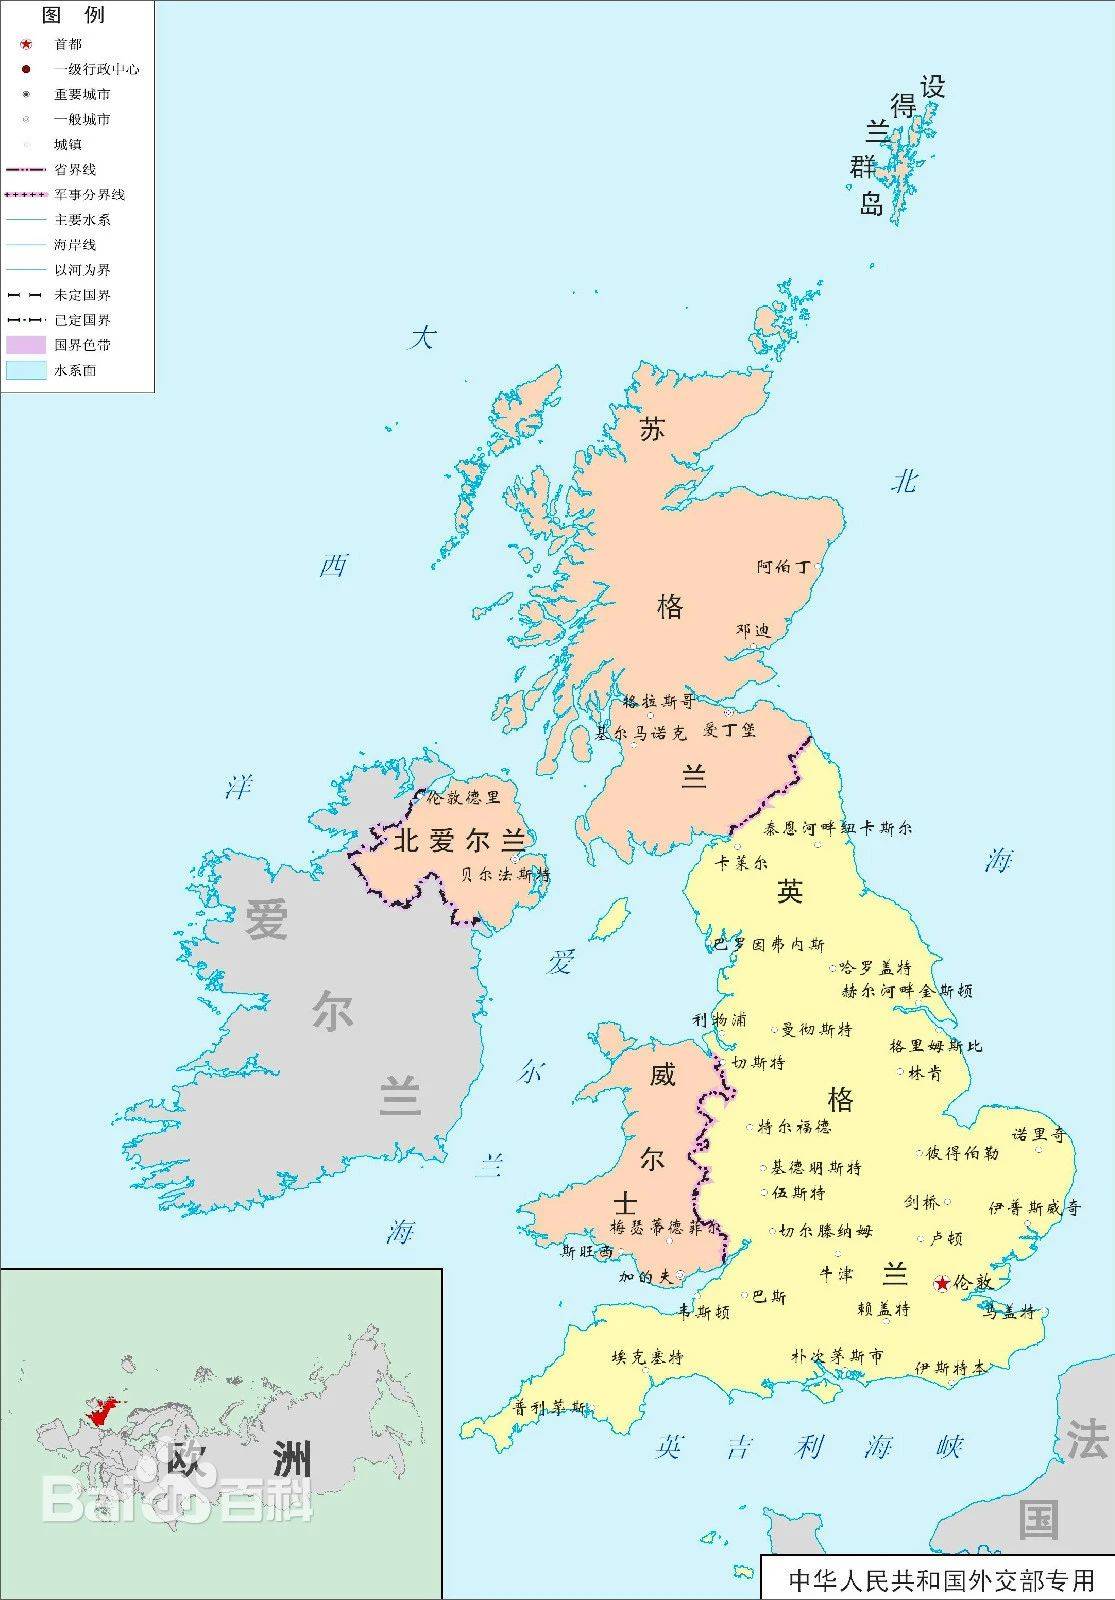 想了解英国这个国家就必须要先弄清楚英国的行政区域划分!